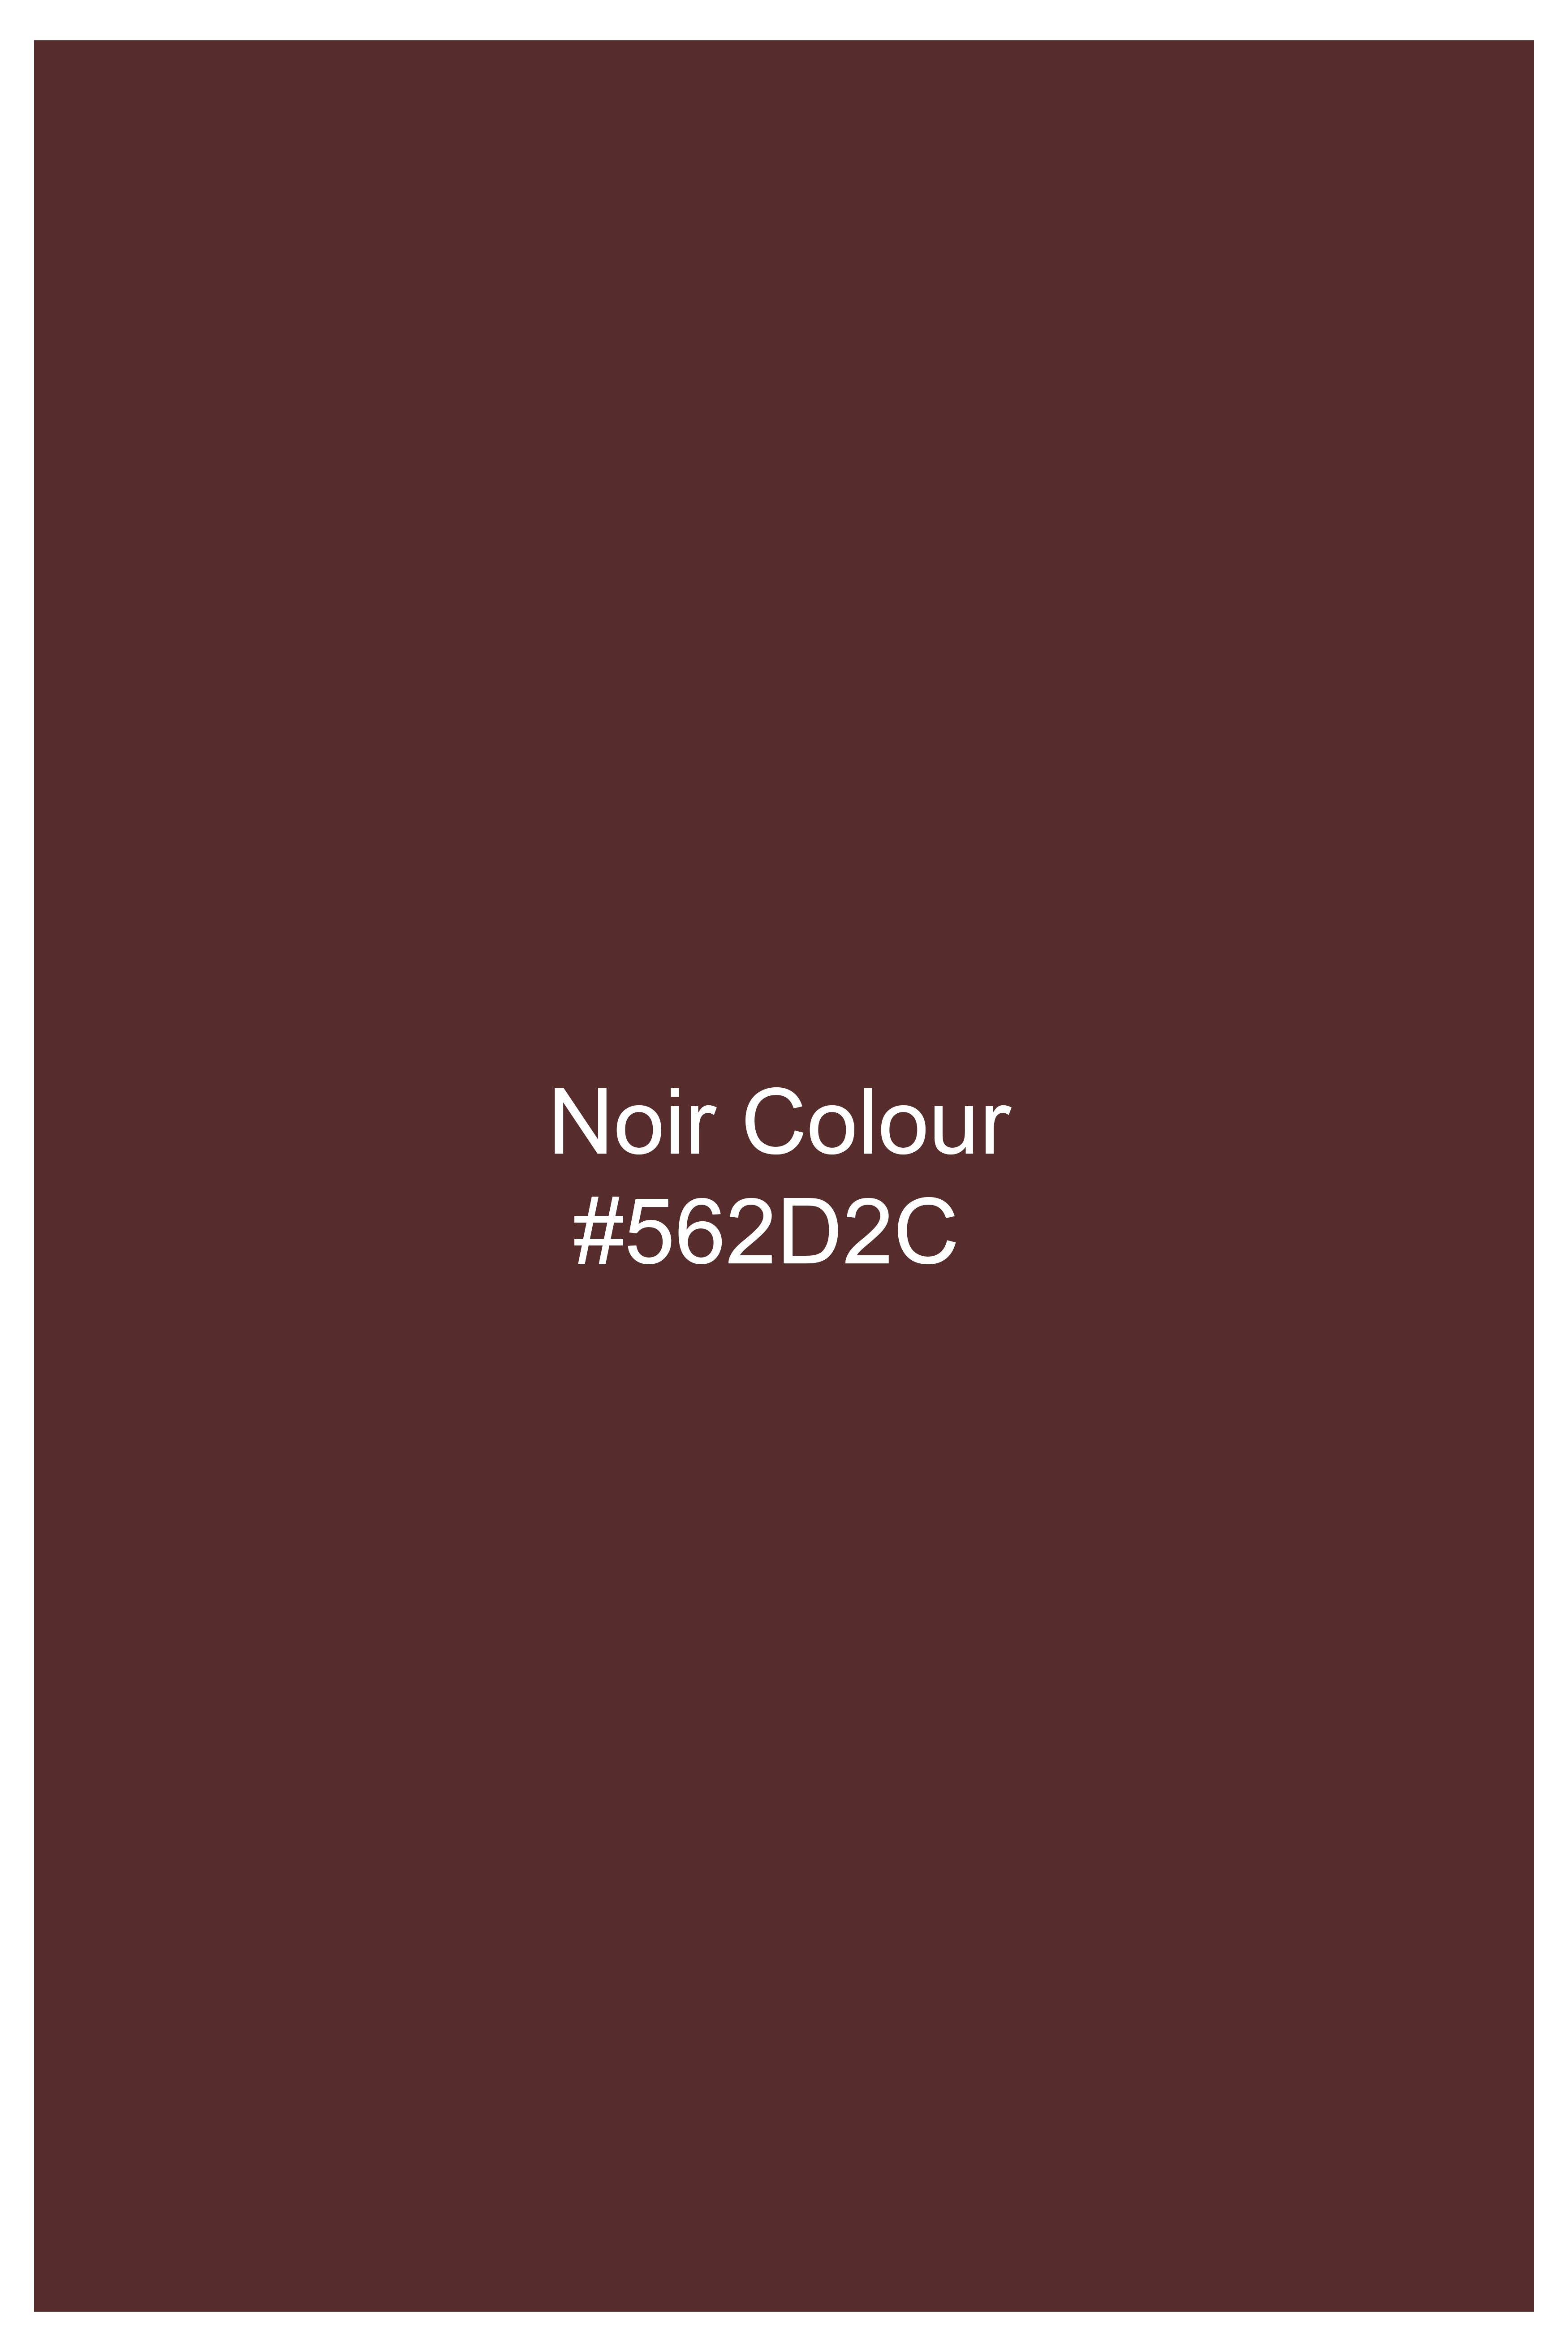 Noir Brown Tweed Waistcoat V2732-36, V2732-38, V2732-40, V2732-42, V2732-44, V2732-46, V2732-48, V2732-50, V2732-52, V2732-54, V2732-56, V2732-58, V2732-60